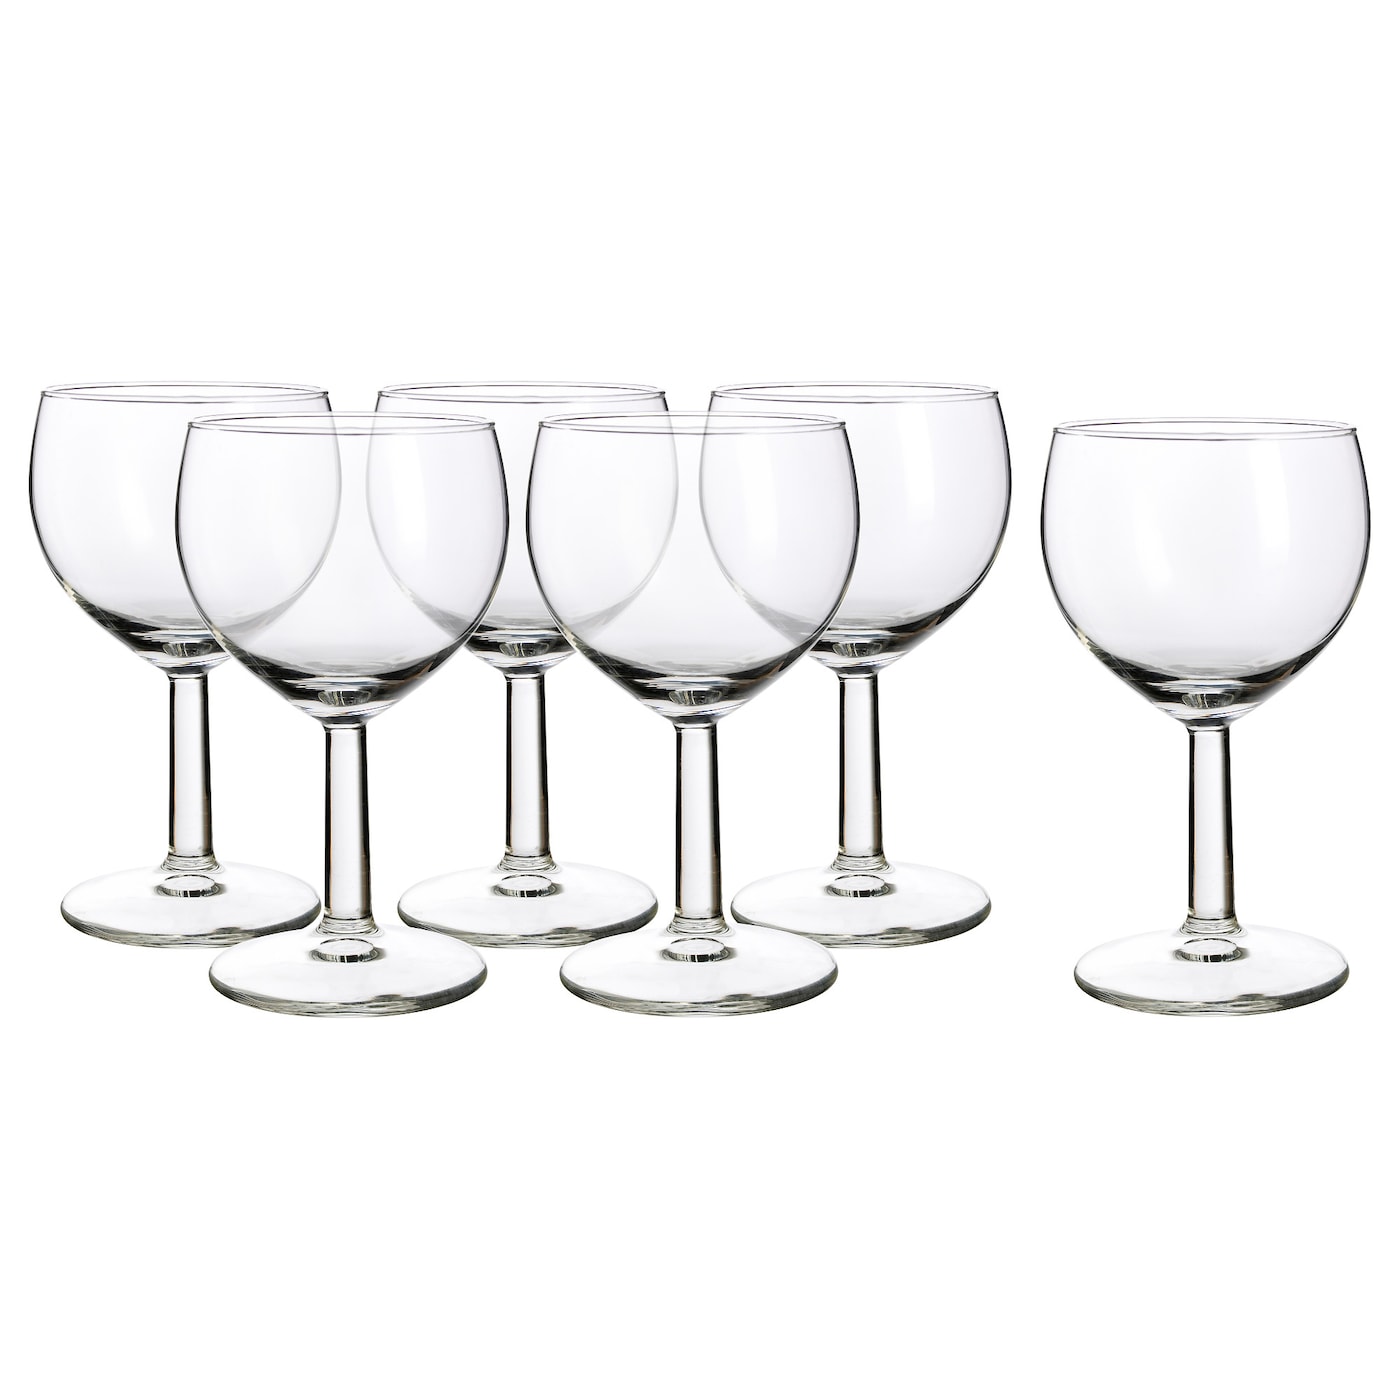 Набор бокалов бля вина, 6 шт. - IKEA FÖRSIKTIGT/FORSIKTIGT, 160 мл, прозрачное стекло, ФЕРСИКТИГТ ИКЕА